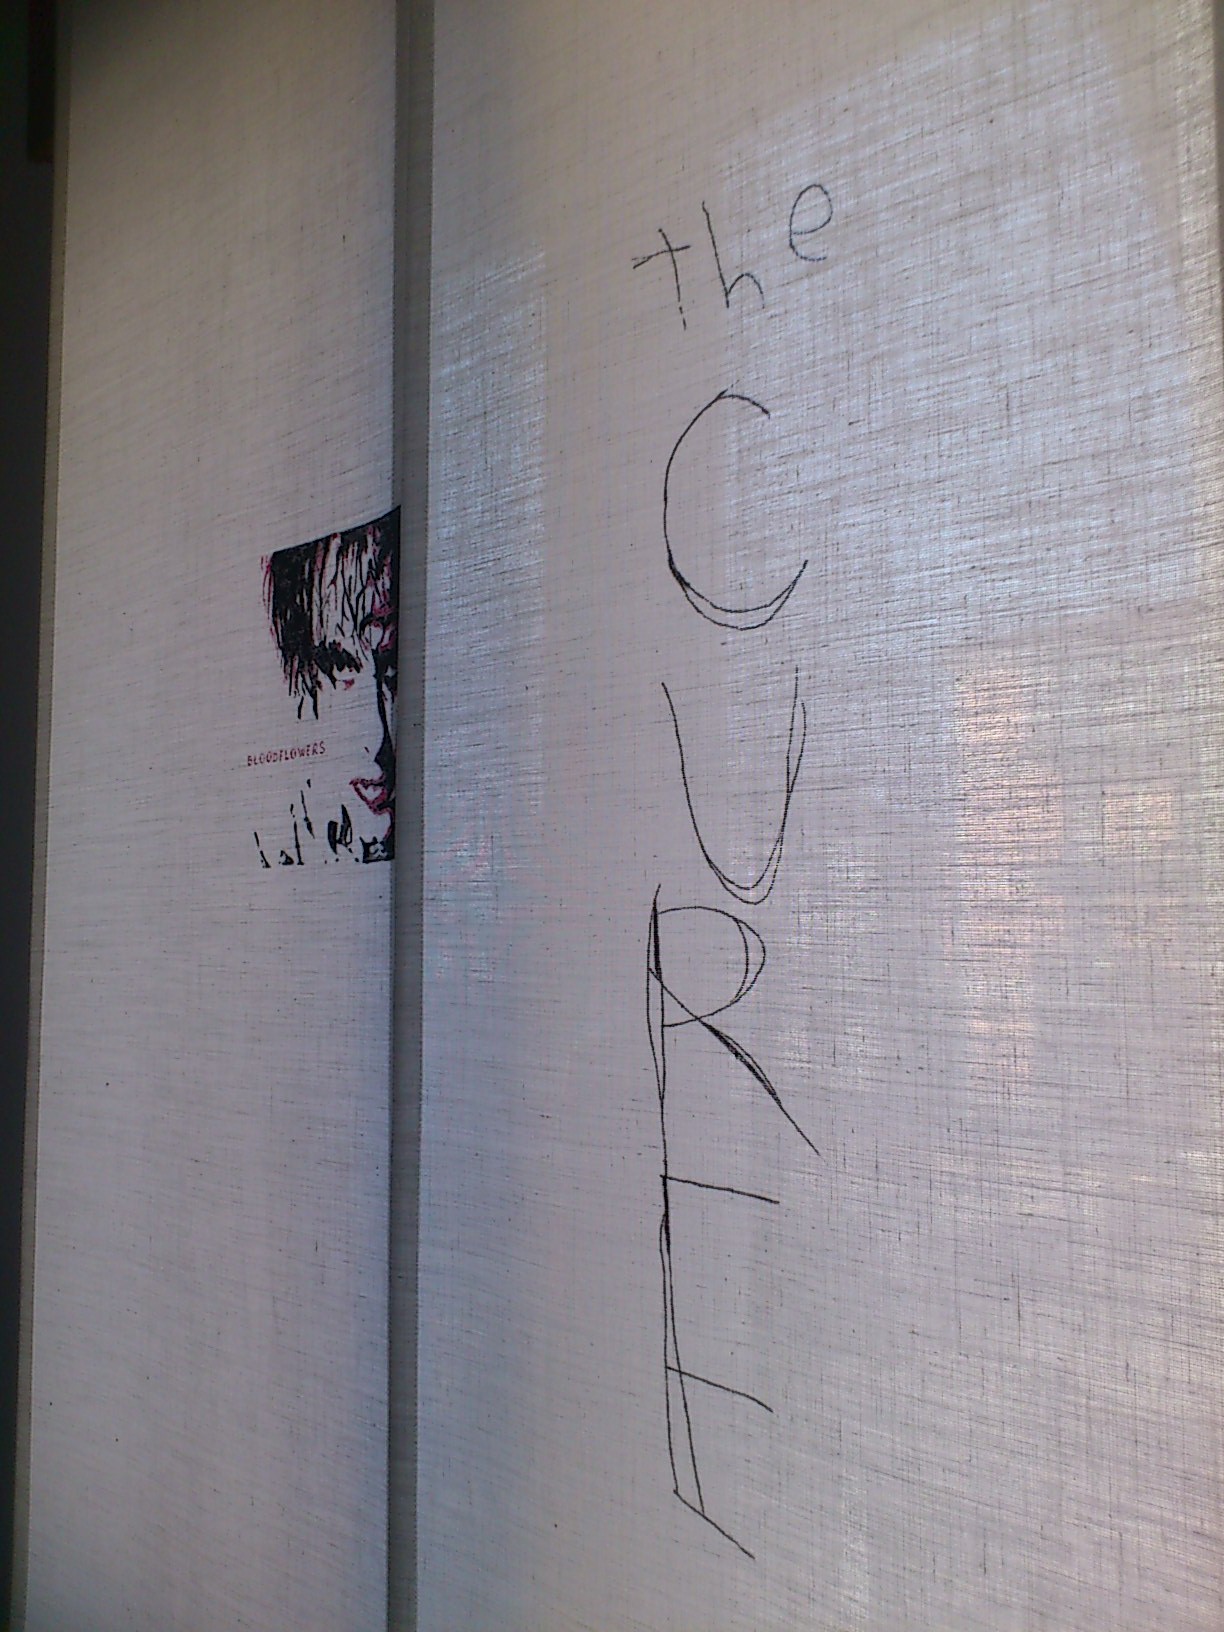 negozio tende verona, tenda a pannelli scorrevoli dipinta a mano "omaggio a Robert Smith - The Cure, tende da interni verona arredamento mariano